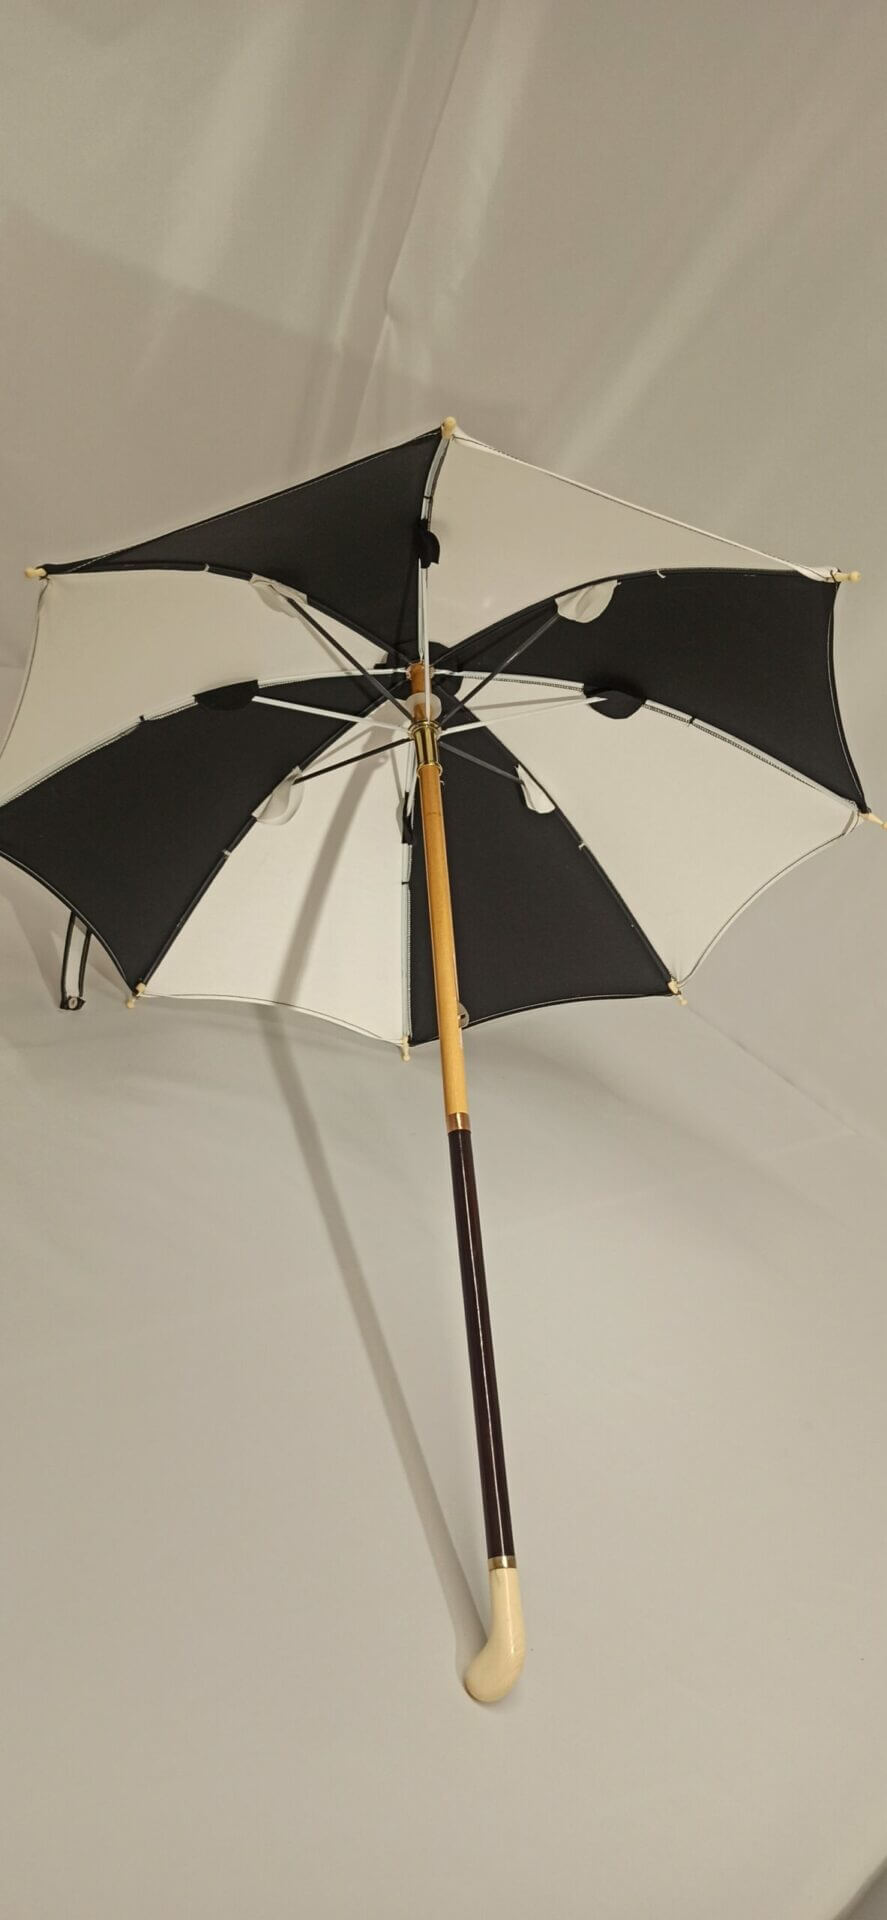 Parapluie noir et blanc